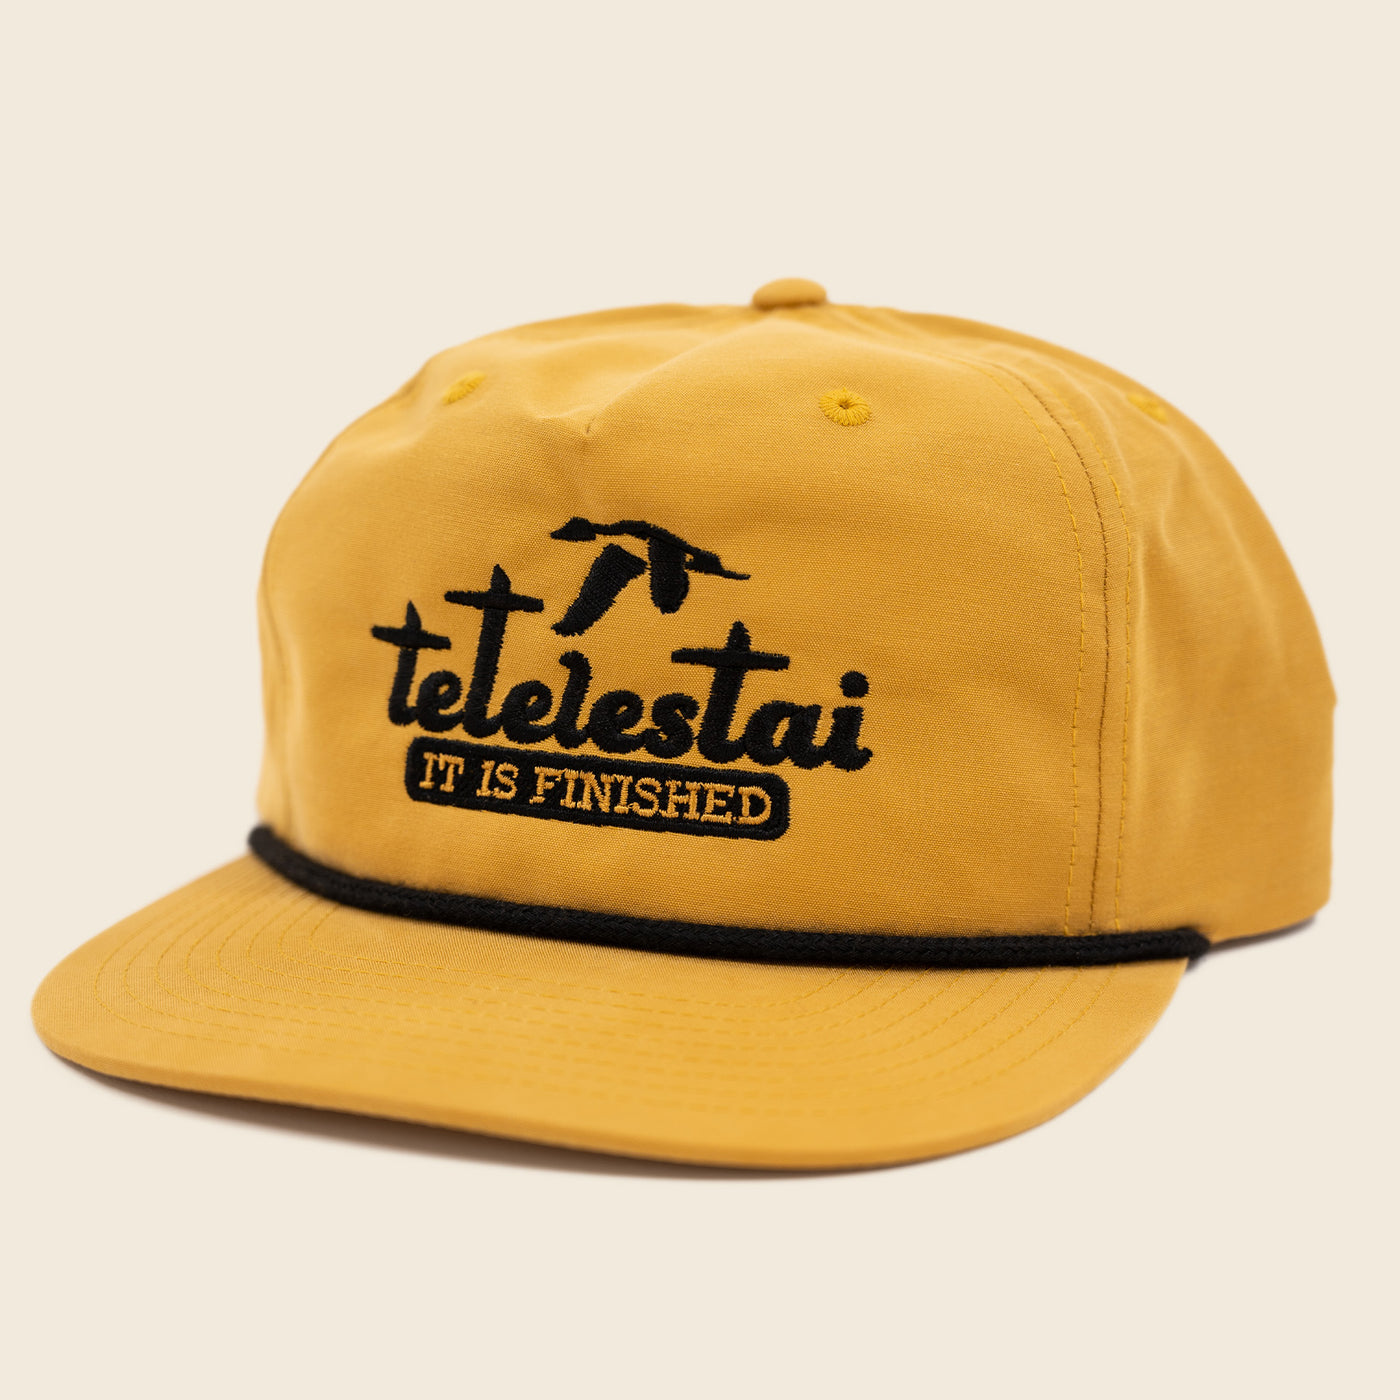 Mustard Tetelestai Hat